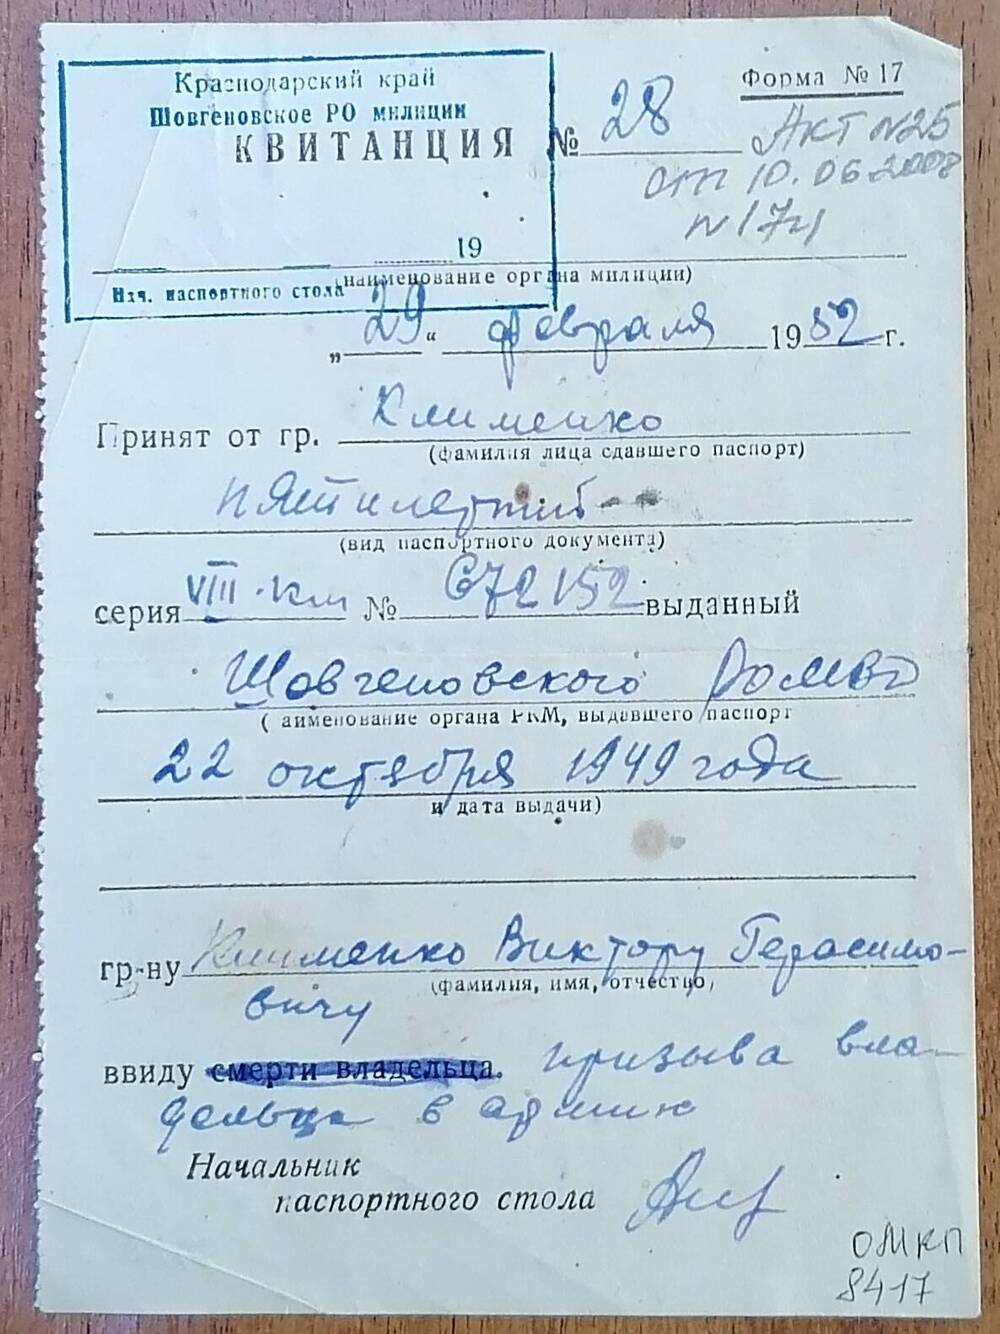 Квитанция № 28 серия VIIIКМ № 672152 гражданина Клименко Виктора Герасимовича ввиду призыва владельца в армию